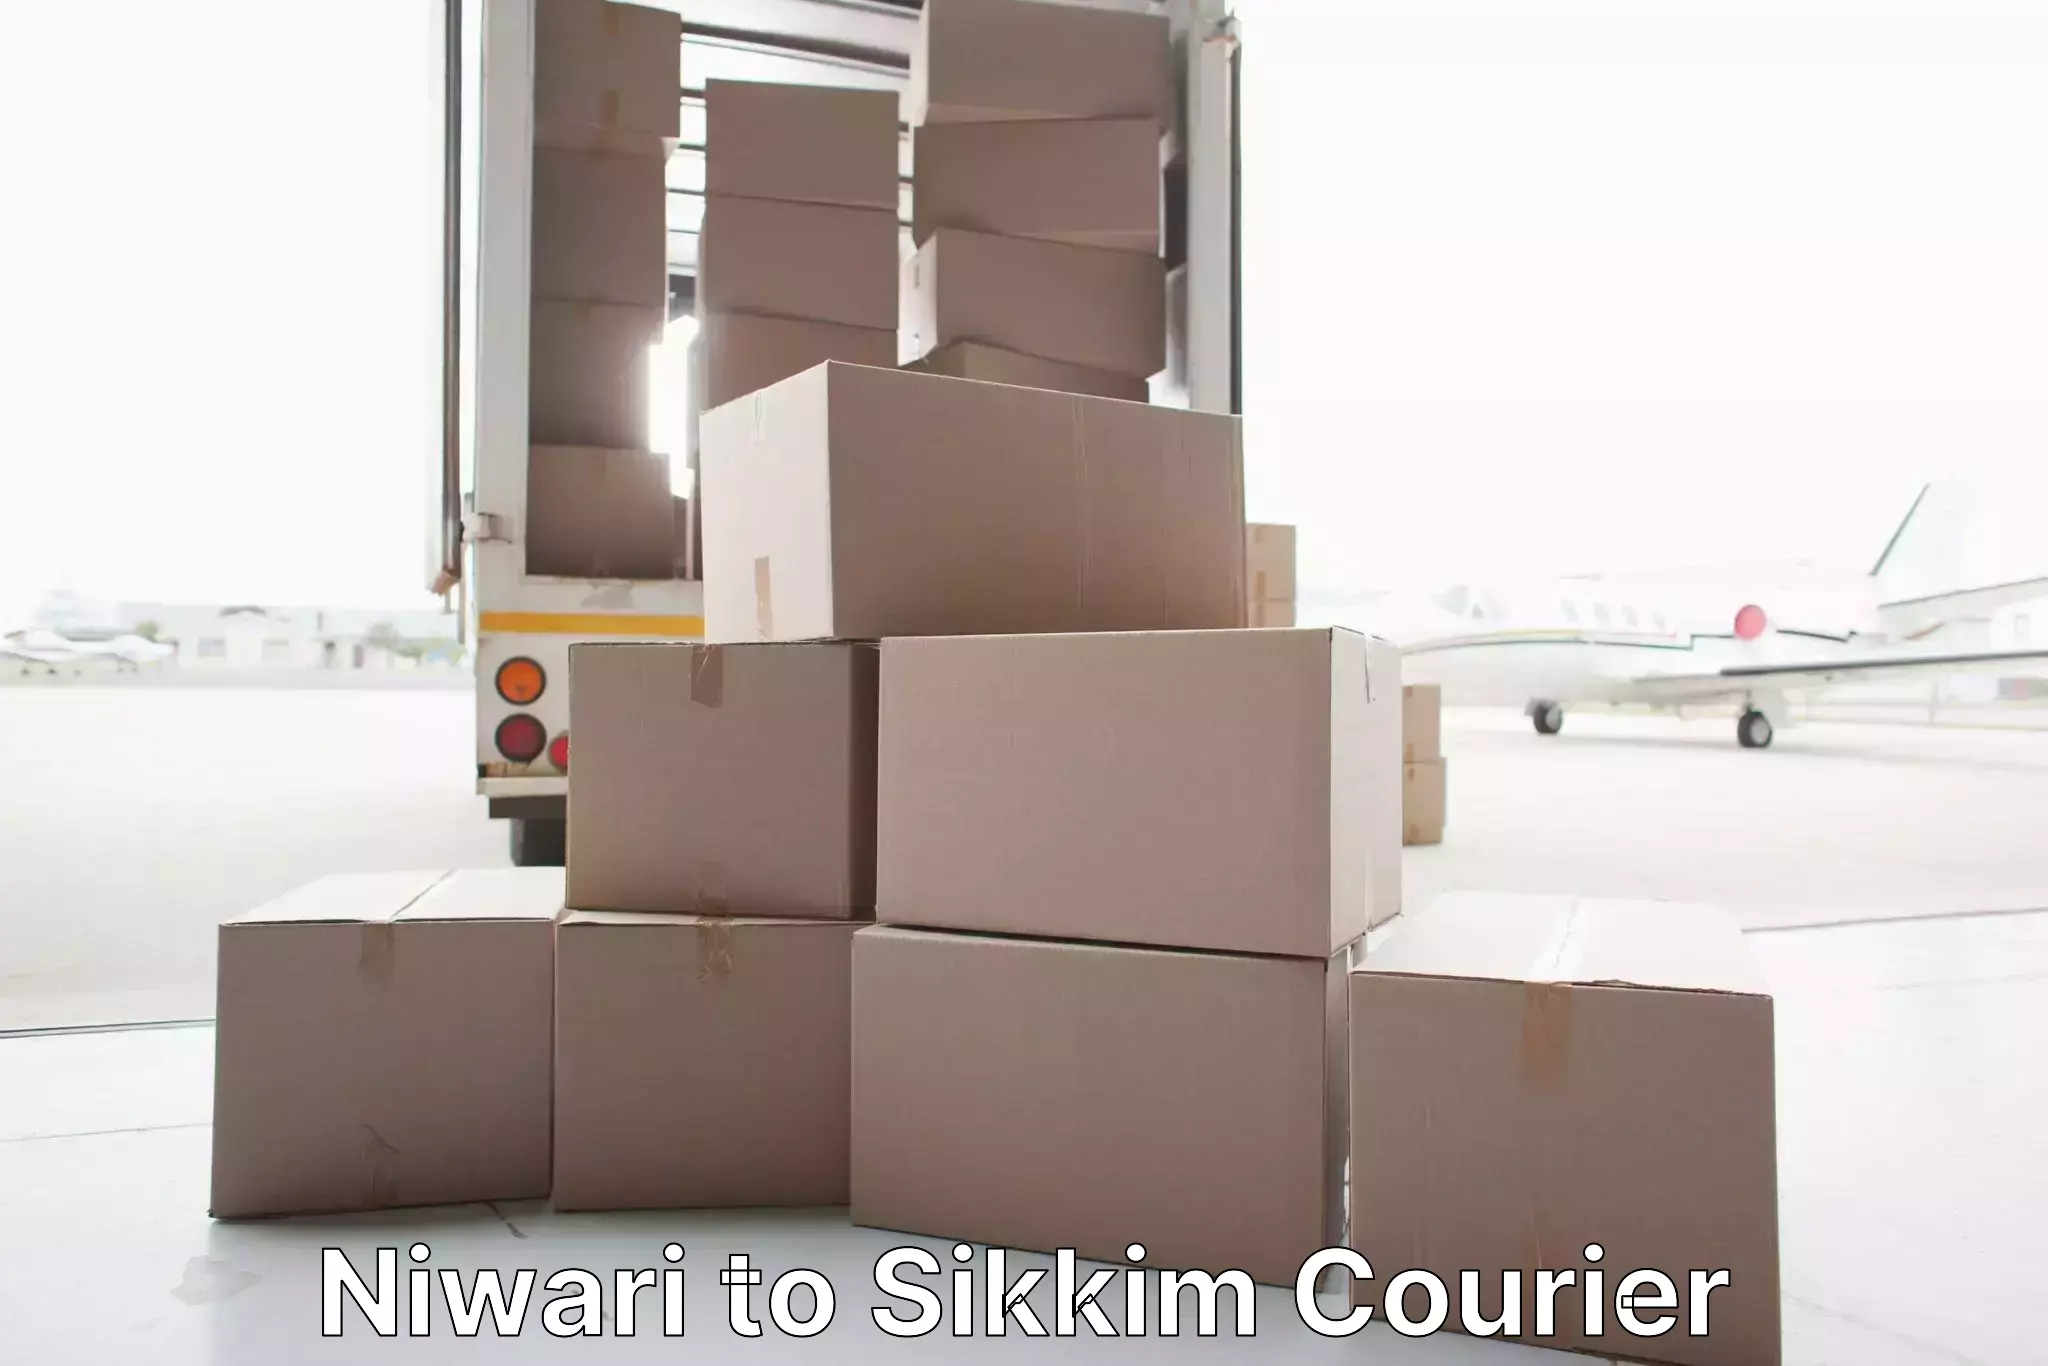 Skilled movers Niwari to NIT Sikkim